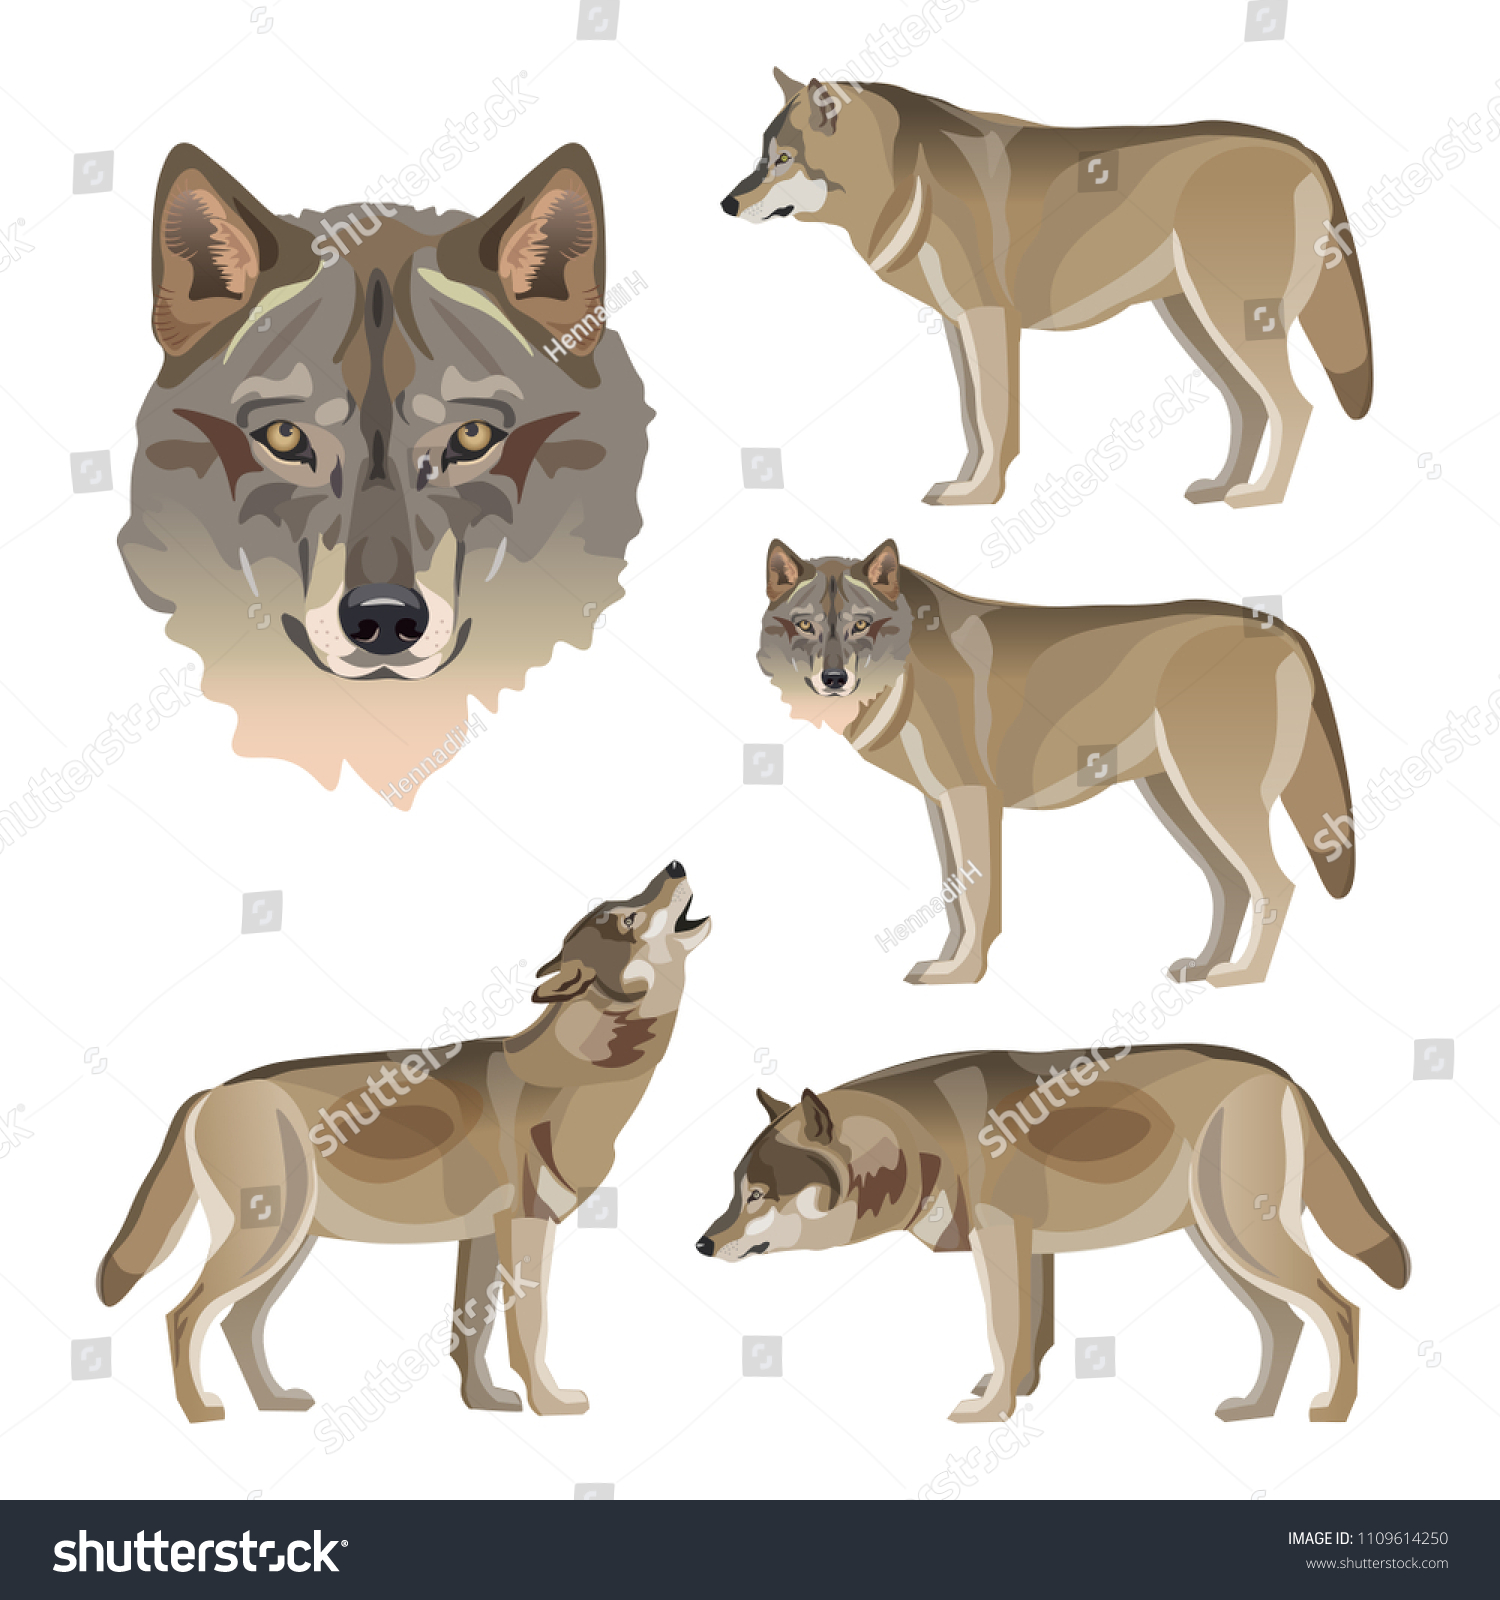 Карточки для детского сада волк